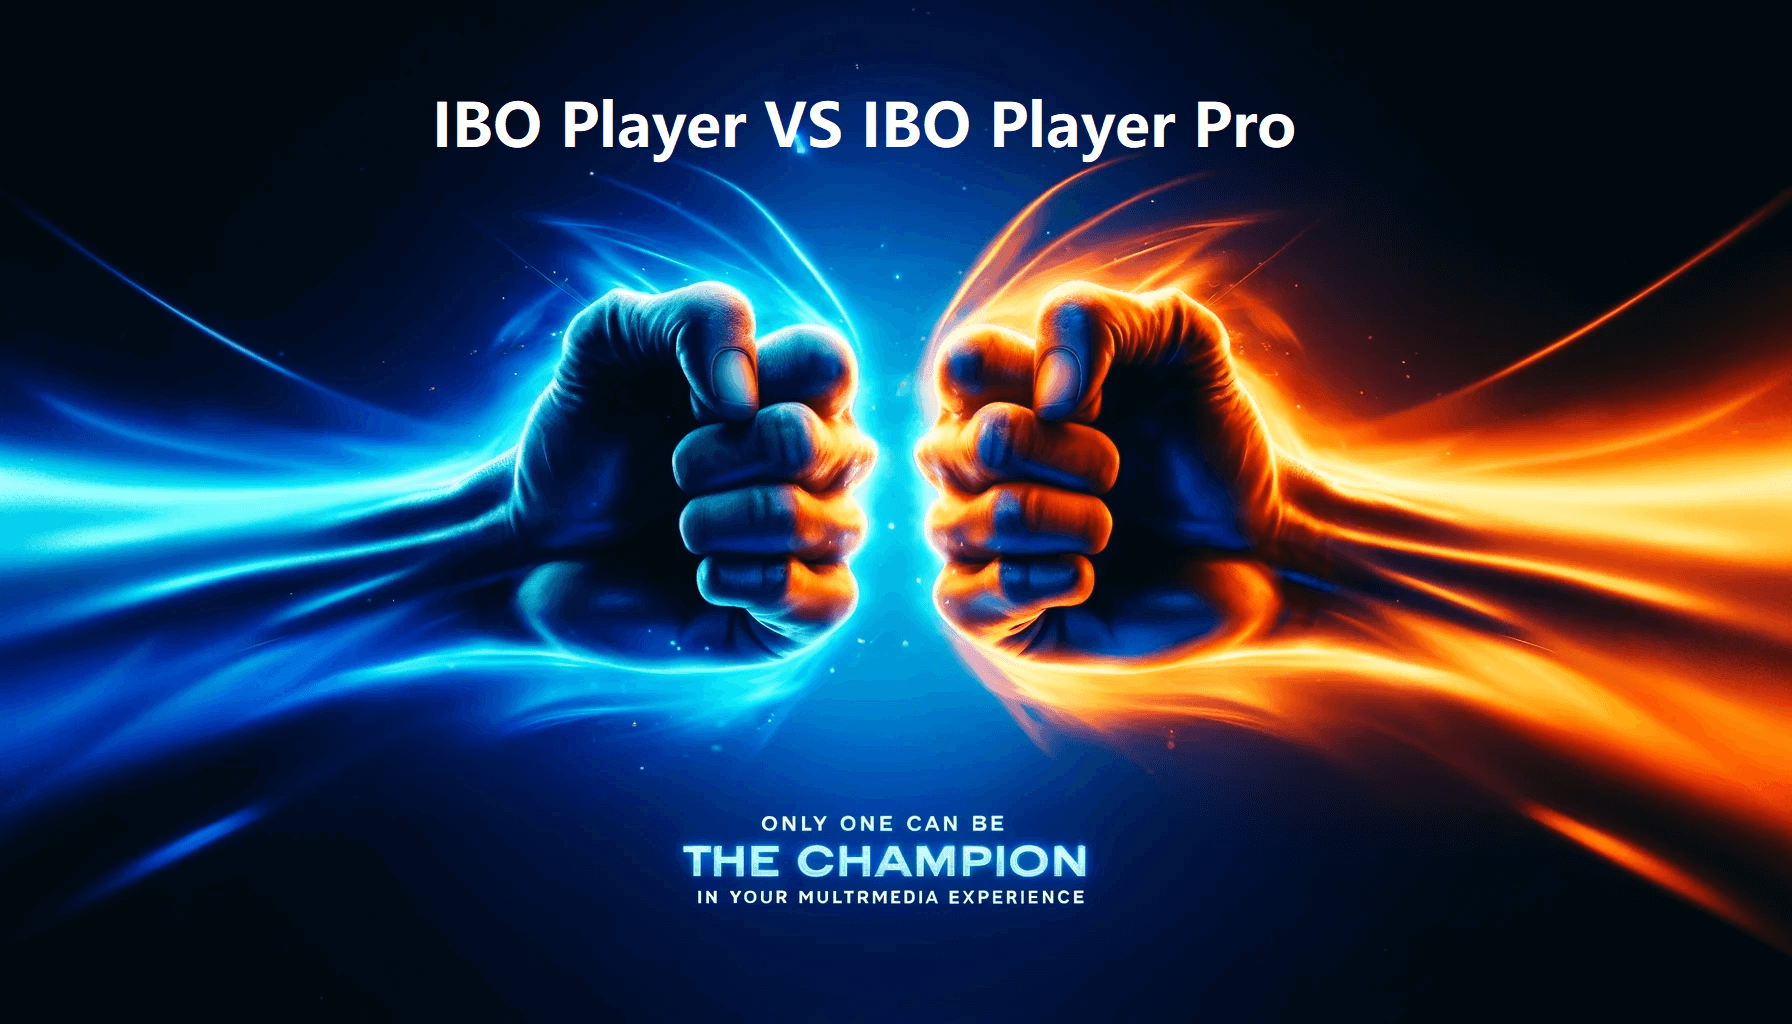 IBO Player vs IBO Player Pro